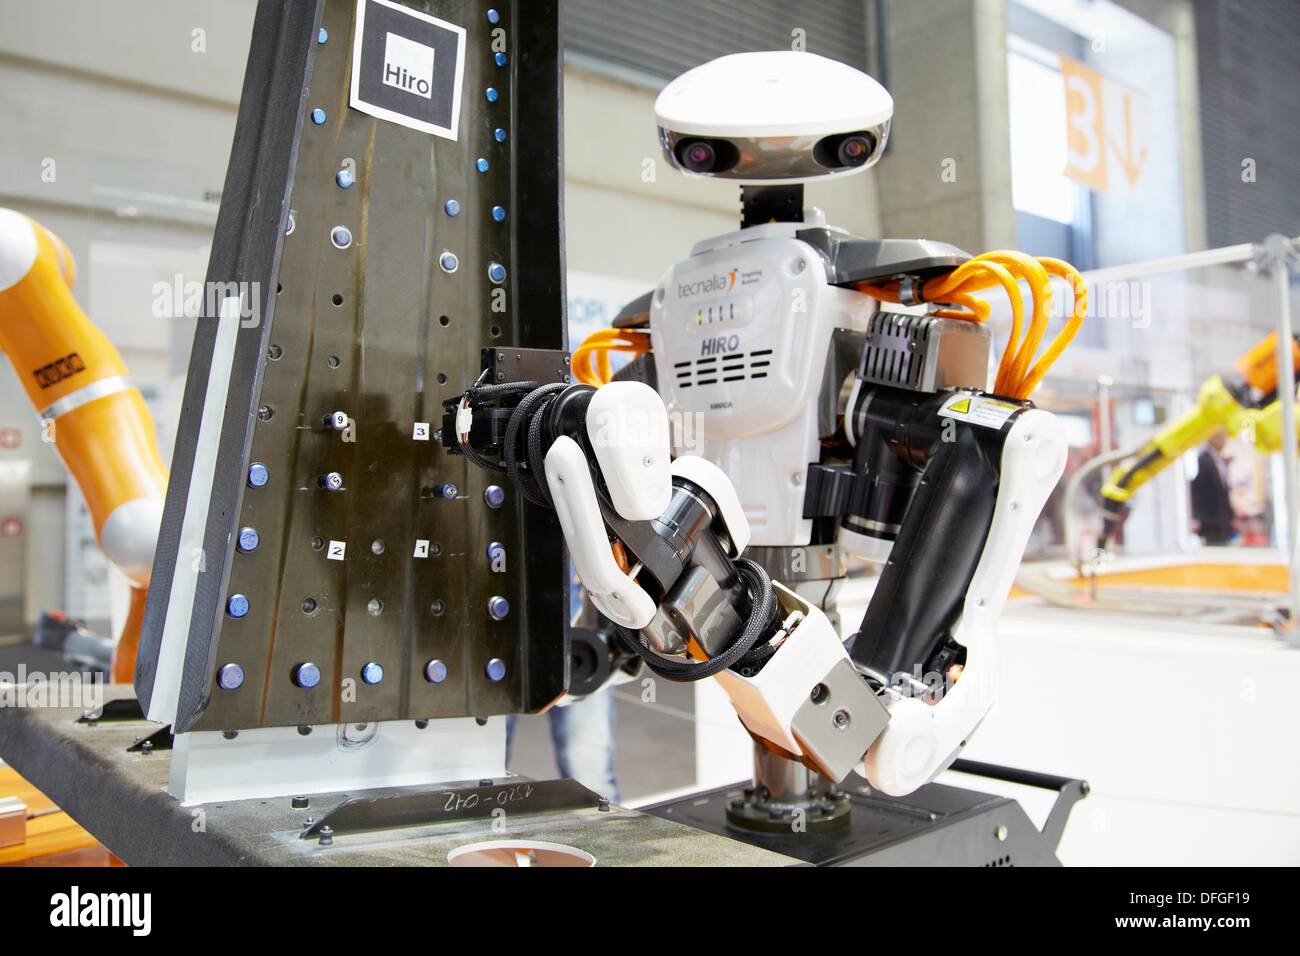 Hiro robot humanoïde, robot japonais travaillant aux côtés de gens, la  robotique industrielle, de la recherche en systèmes industriels, R & D + i  Photo Stock - Alamy